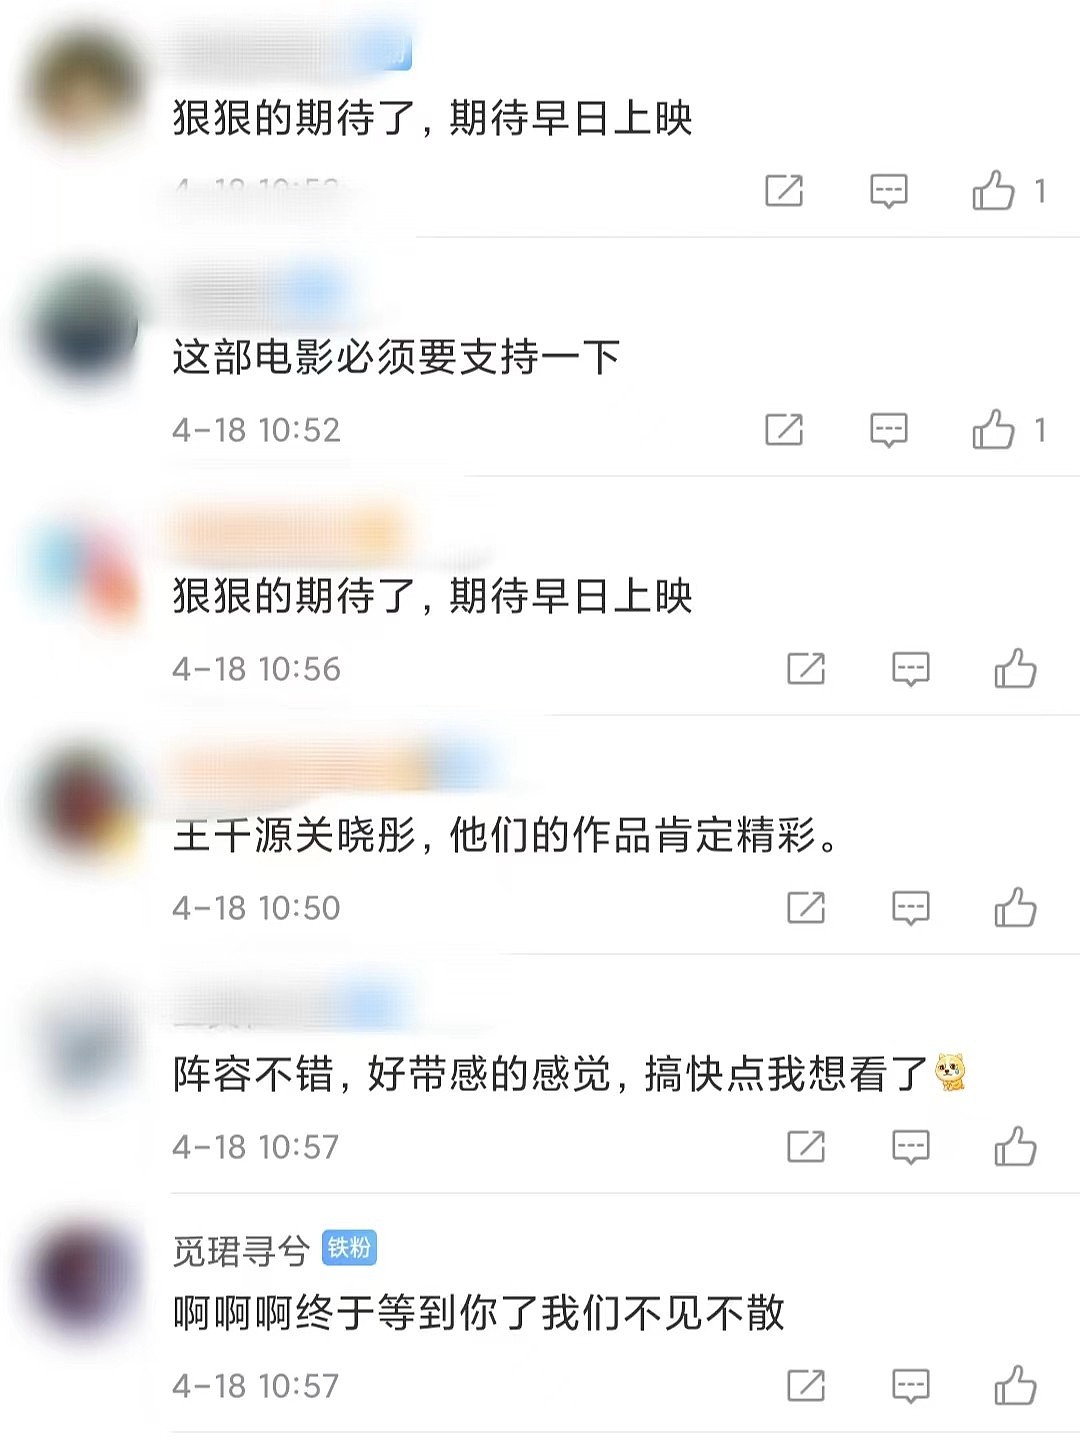 反诈电影猎屠定档6月3日，王千源破解杀猪盘，关晓彤出演女警花 - 6